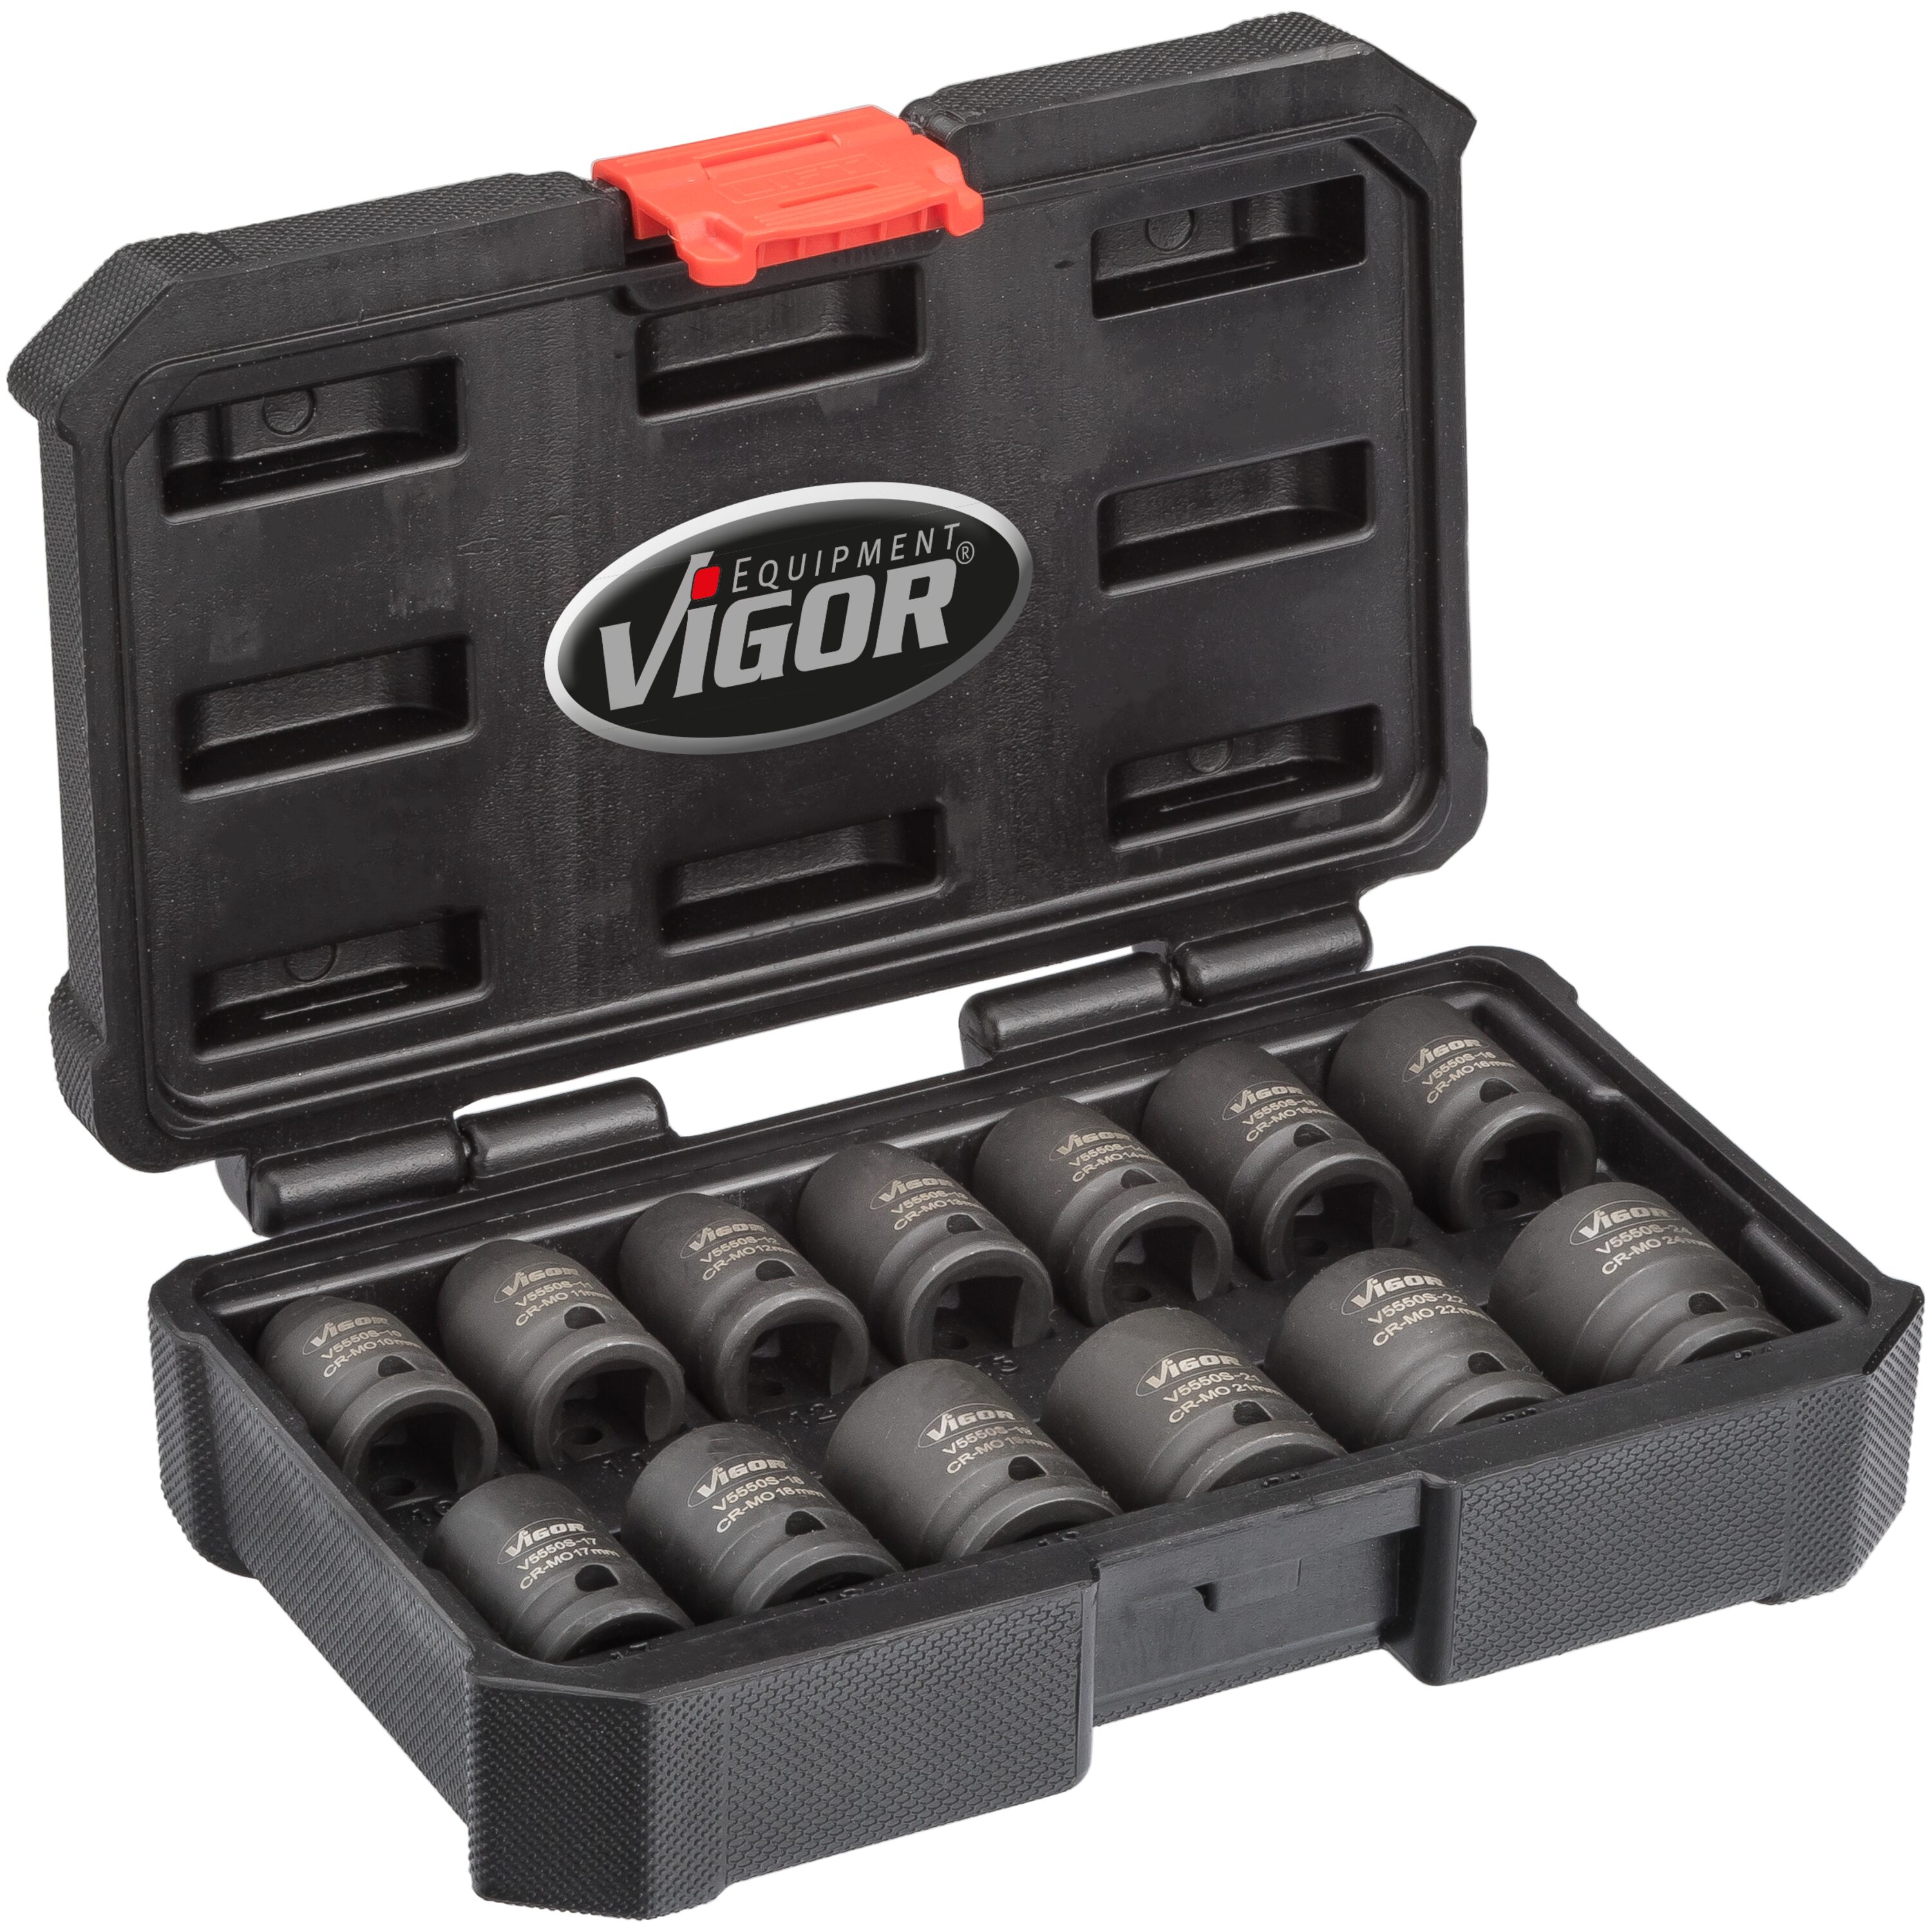 www.vigor-equipment.com